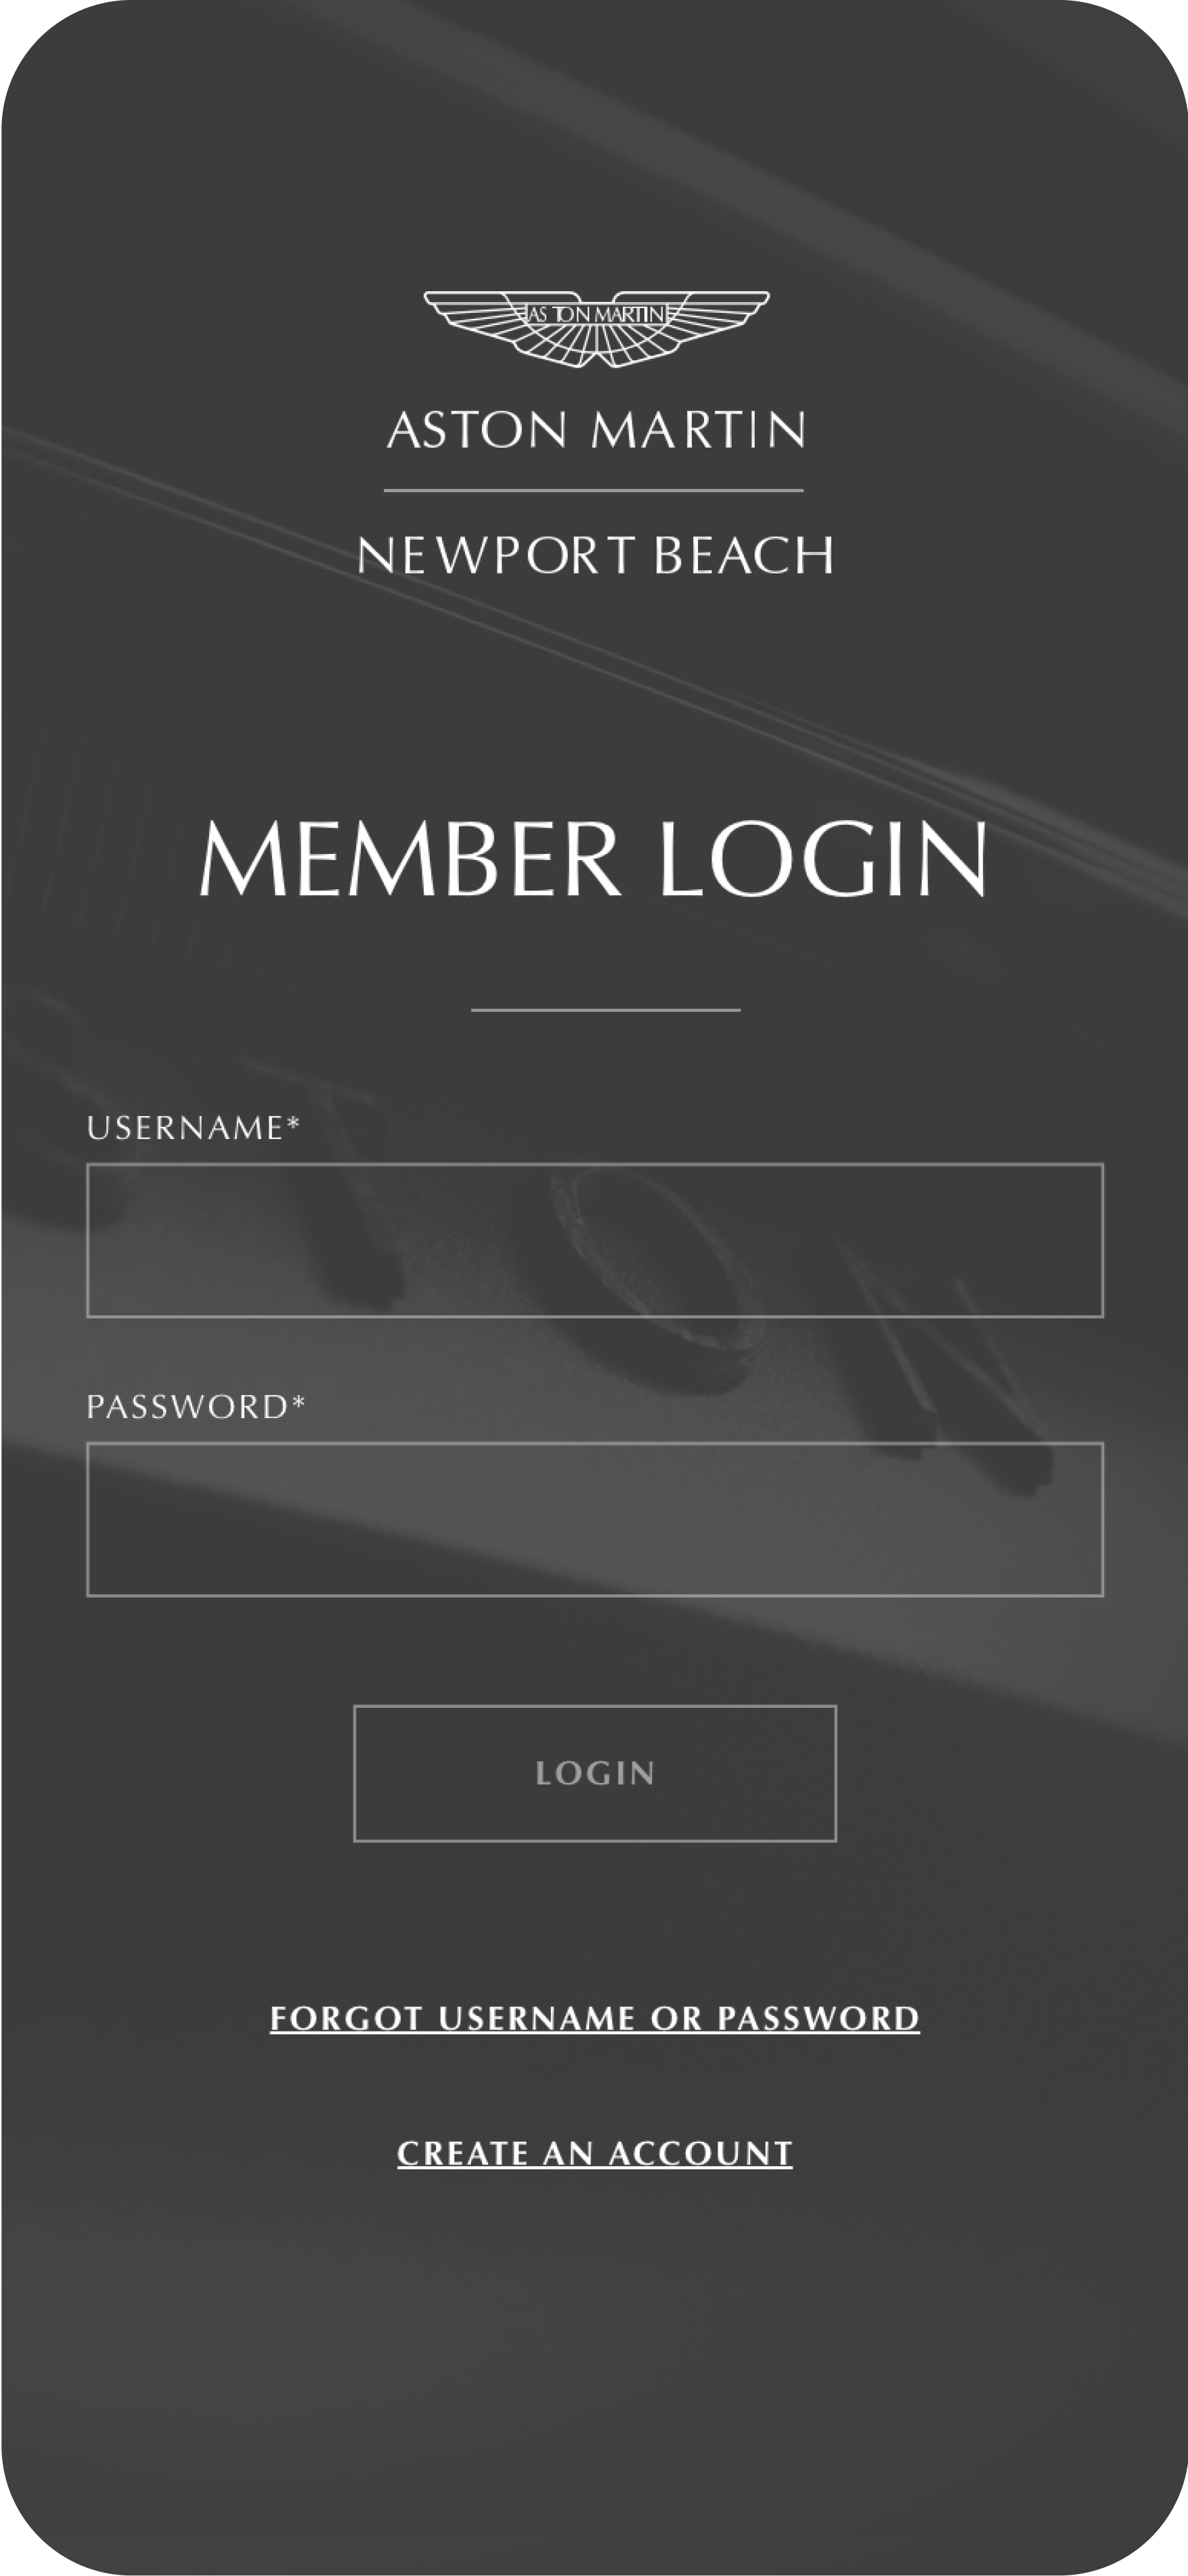 member login